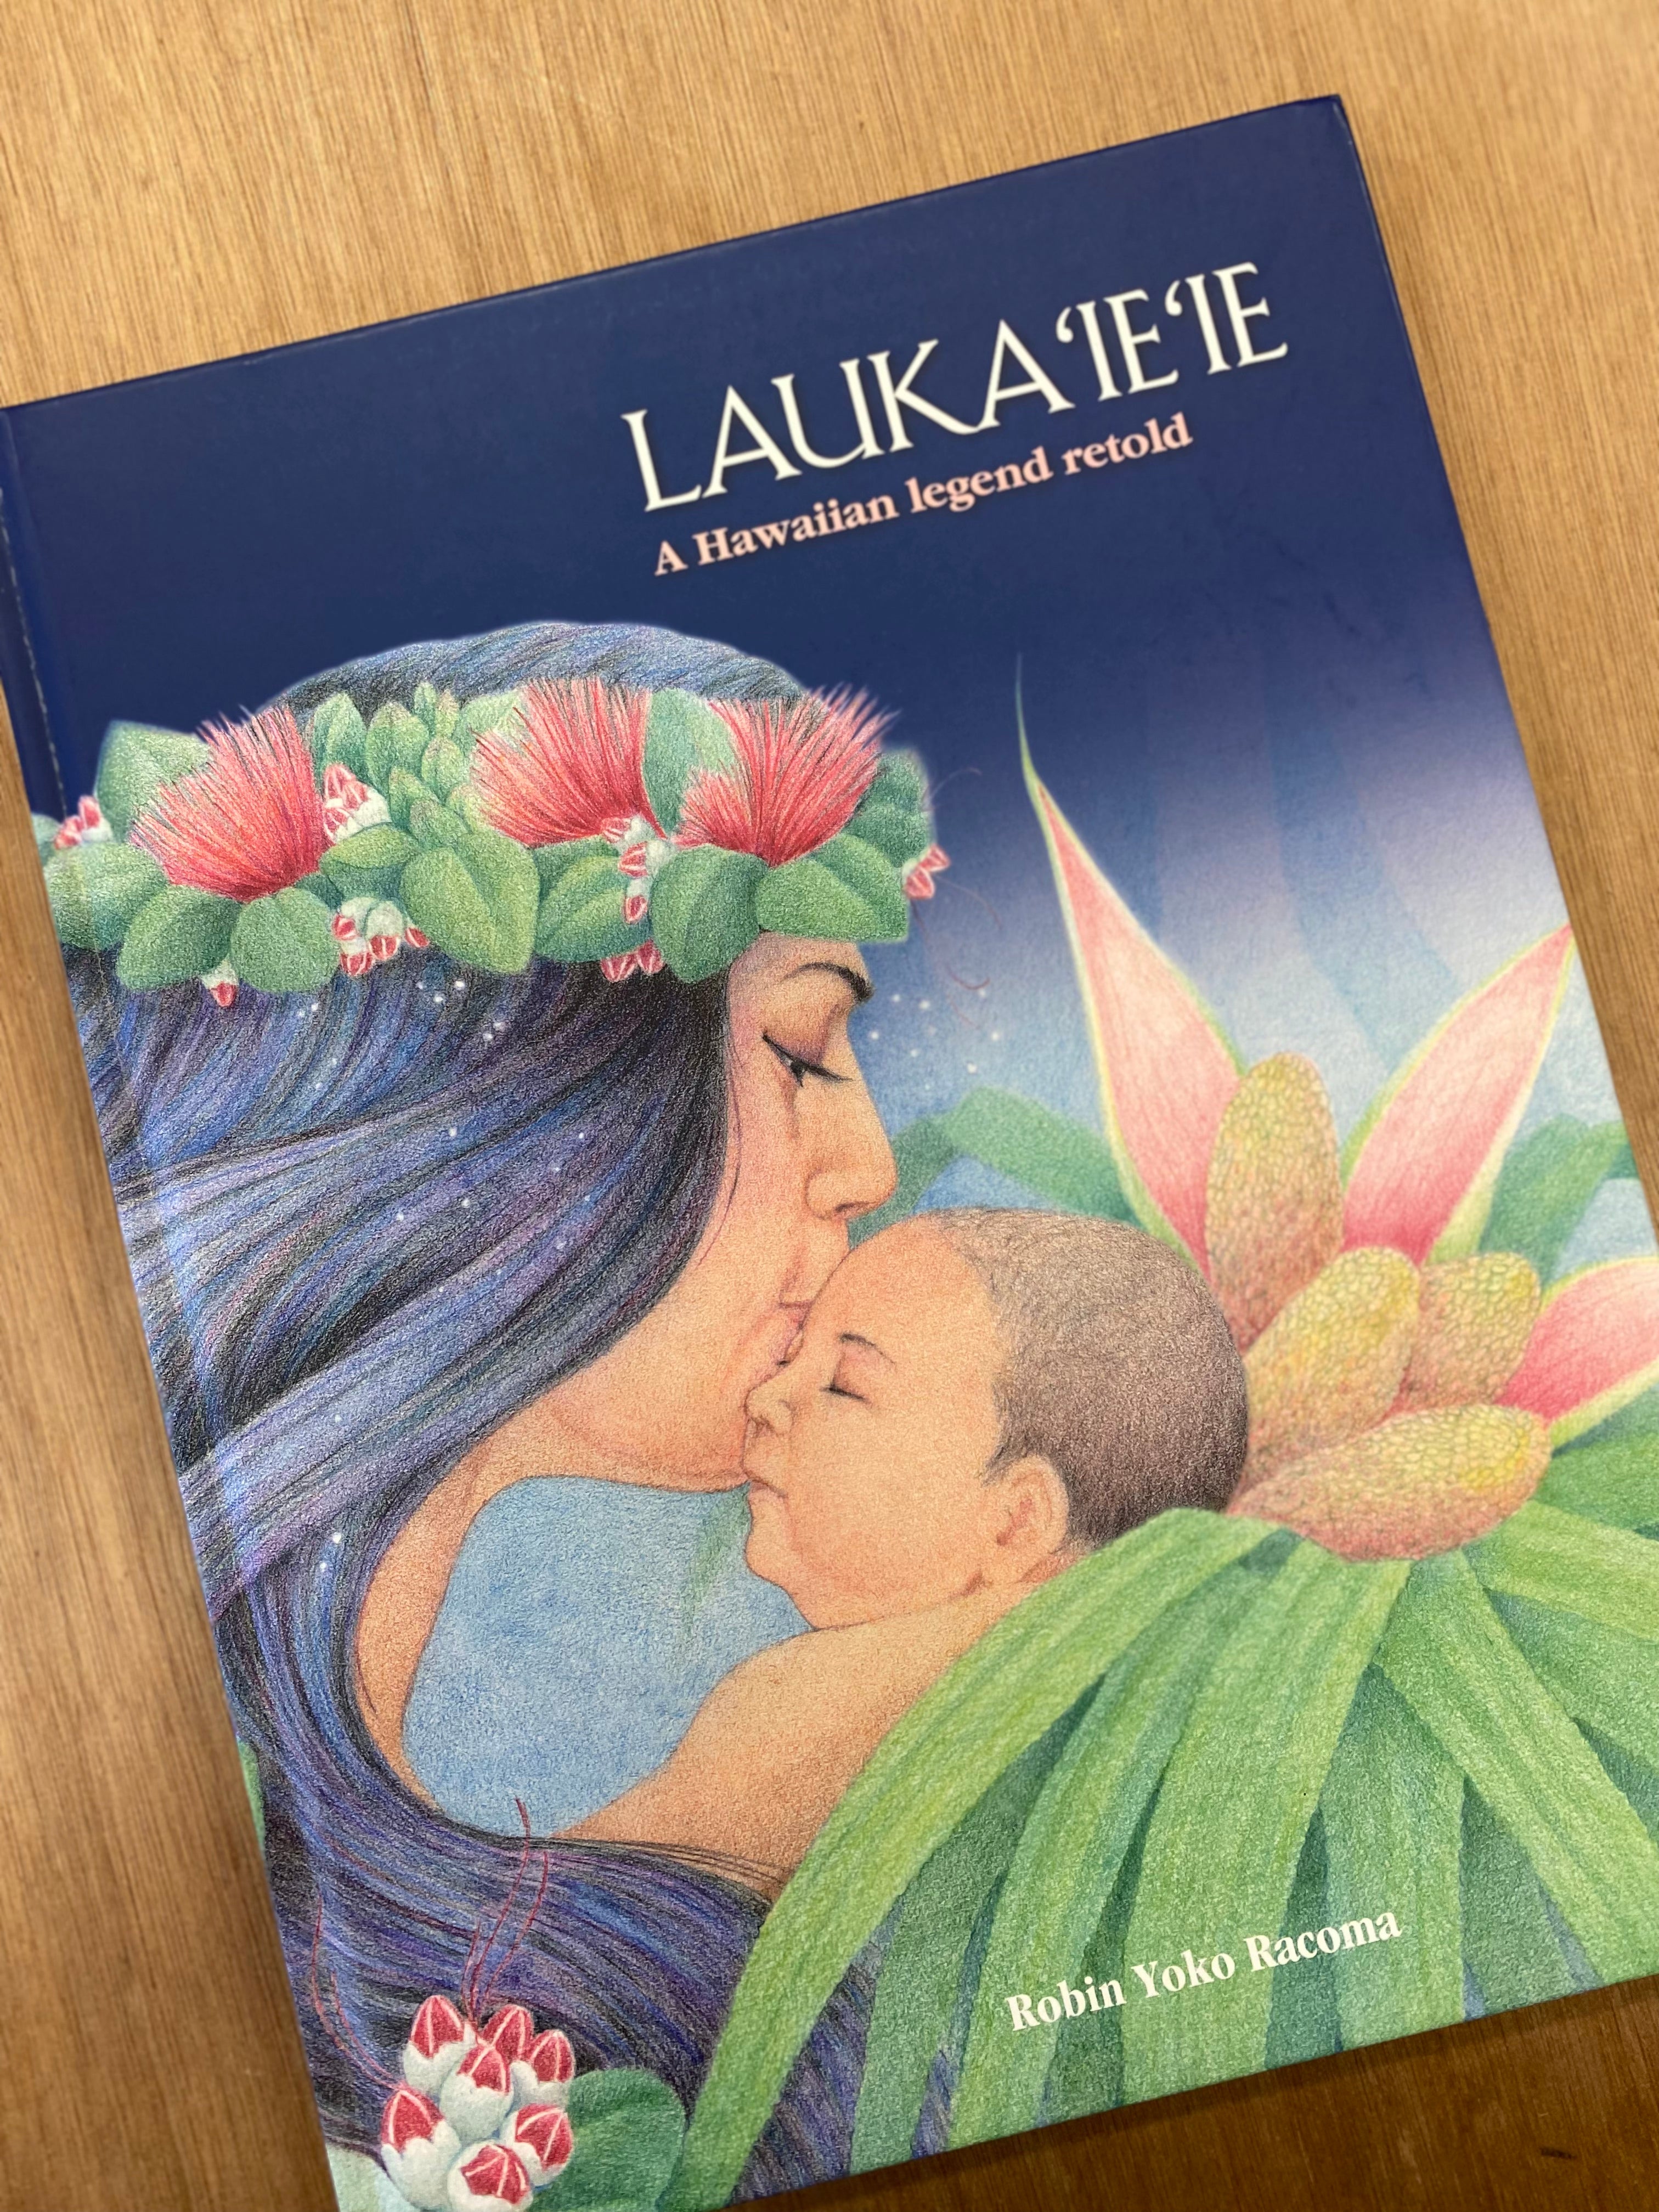 Lauka'ie'ie: A Hawaiian Legend Retold by Robin Yoko Racoma